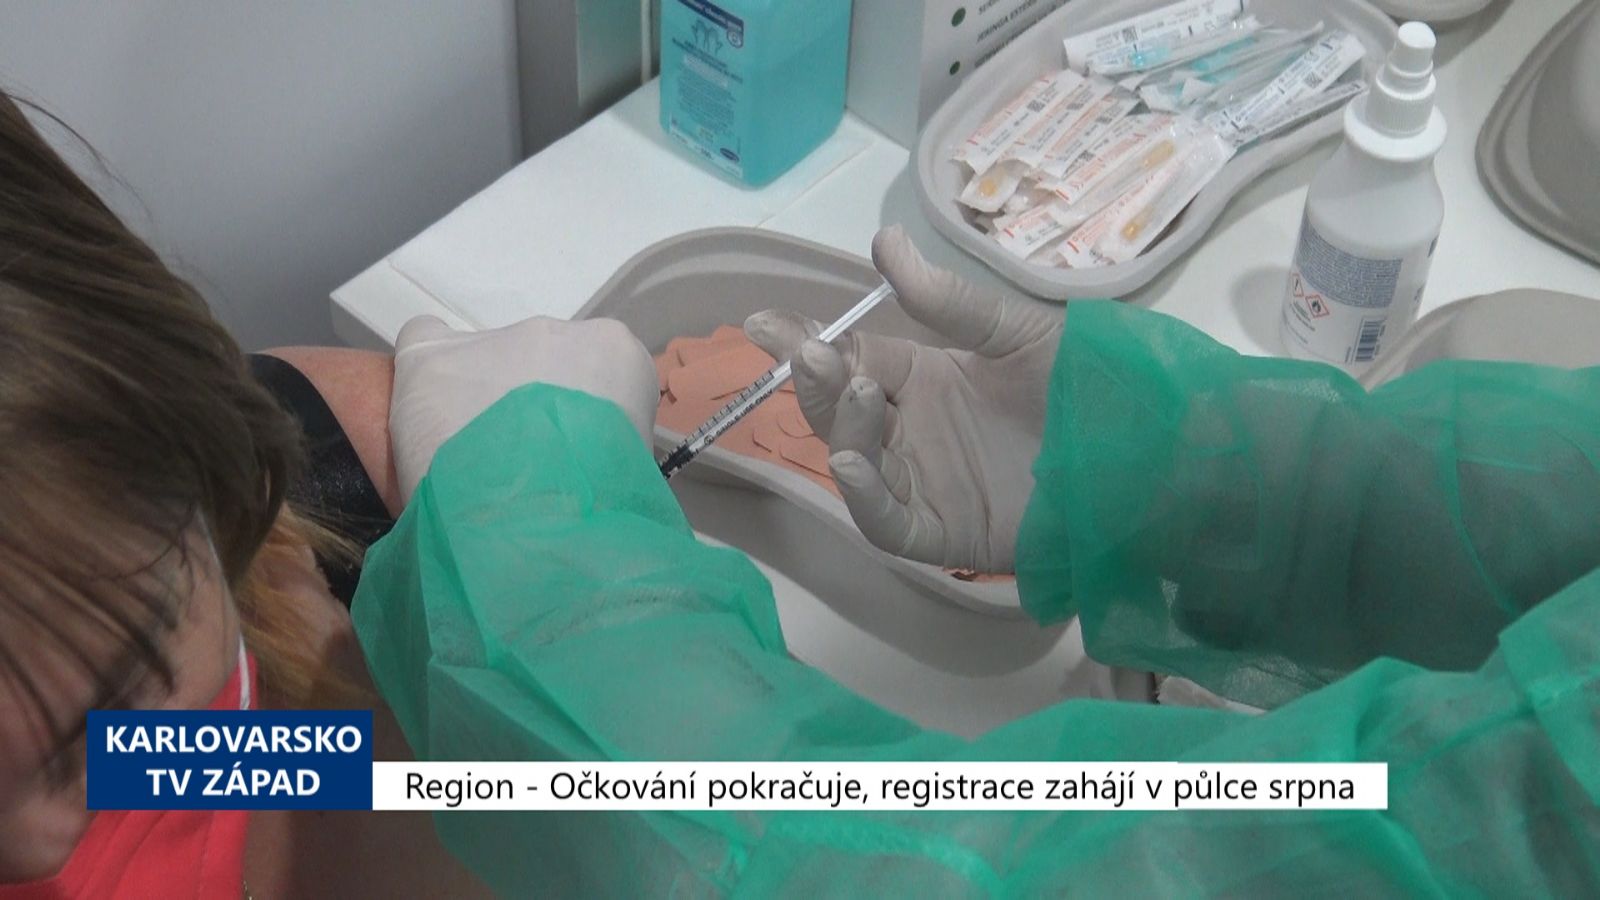 Region: Očkování pokračuje, registrace zahájí v půlce srpna (TV Západ)